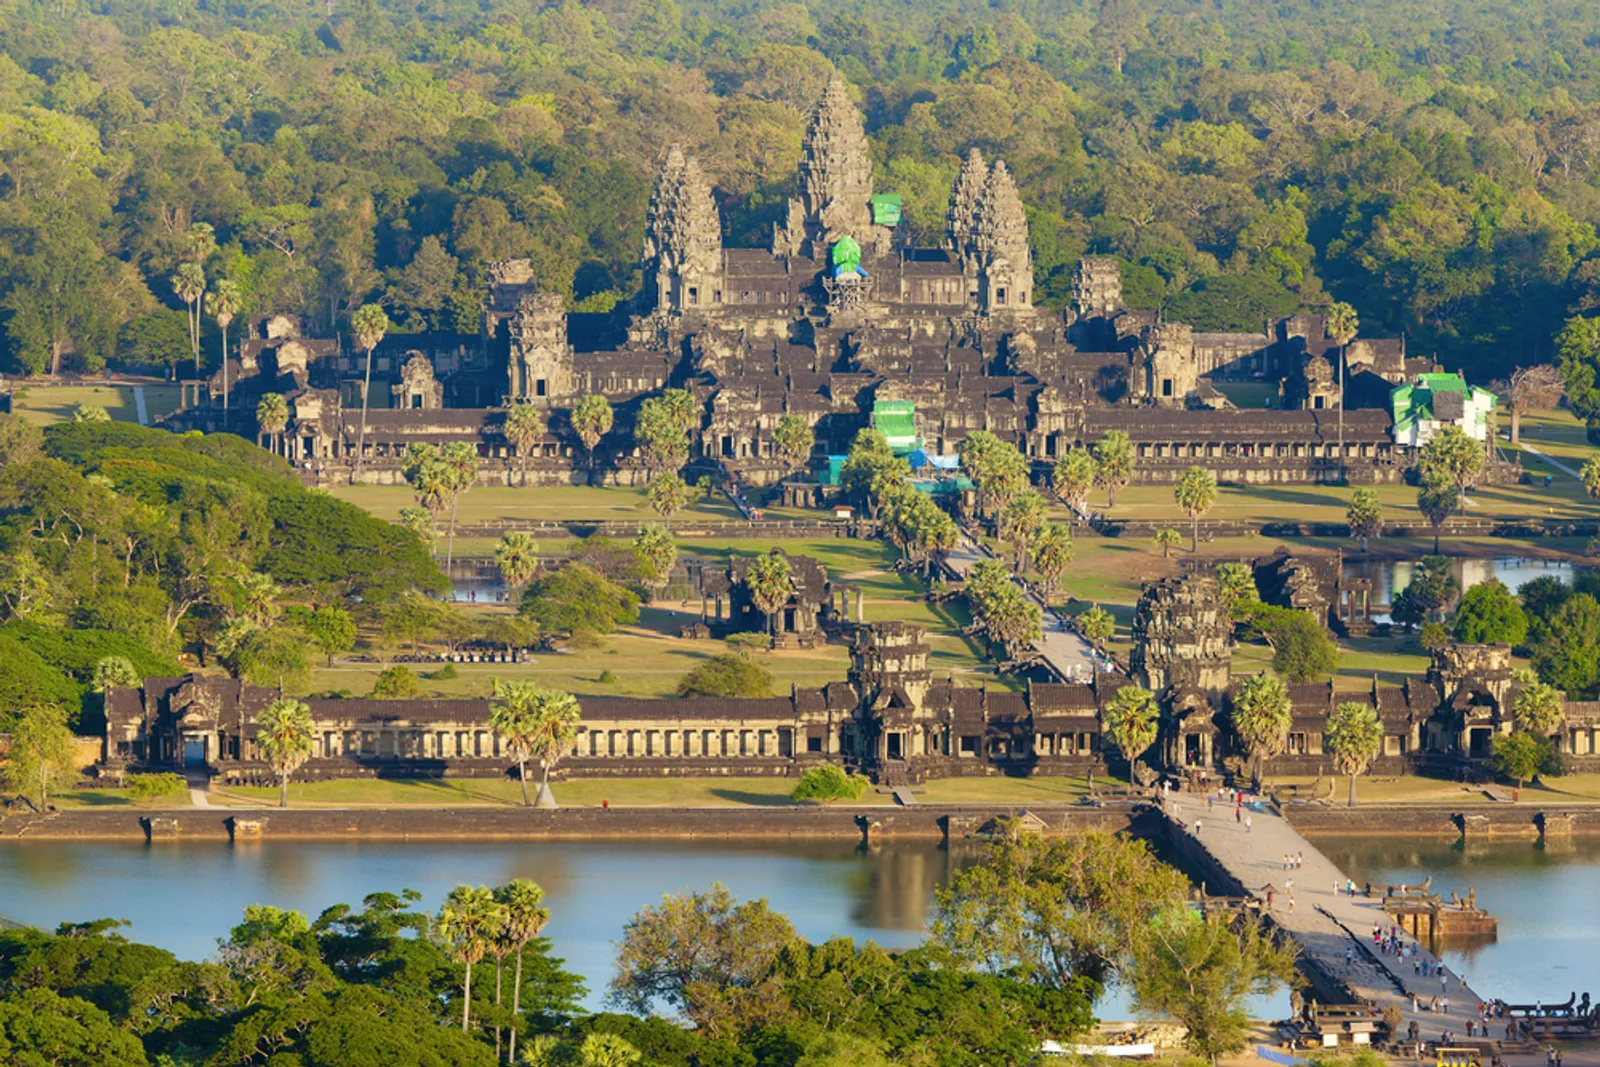 Angkor Wat Kamboja: Sejarah, Lokasi, dan Fakta Menariknya